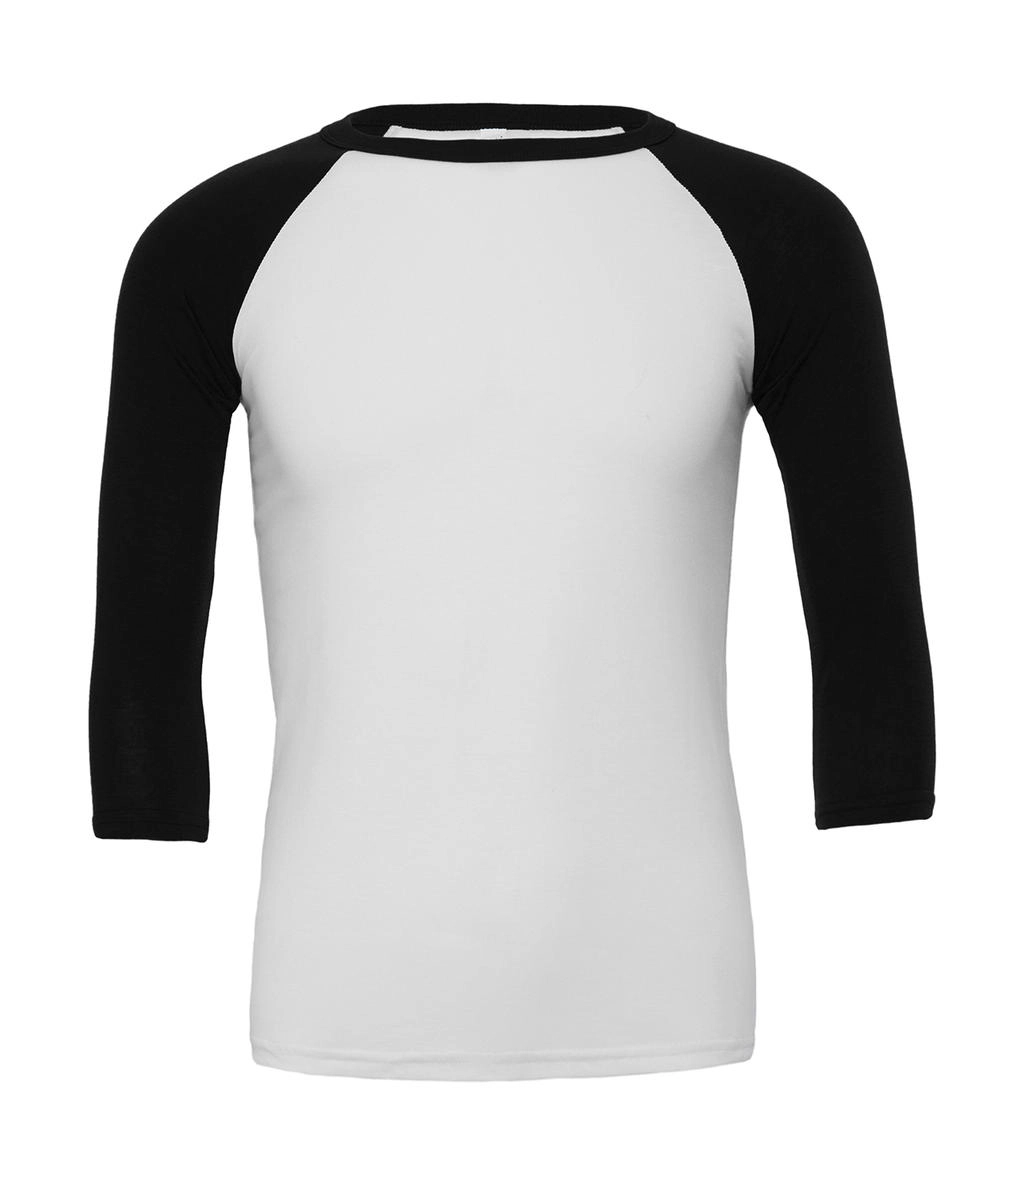 Unisex 3/4 Sleeve Baseball T-Shirt zum Besticken und Bedrucken in der Farbe White/Black mit Ihren Logo, Schriftzug oder Motiv.